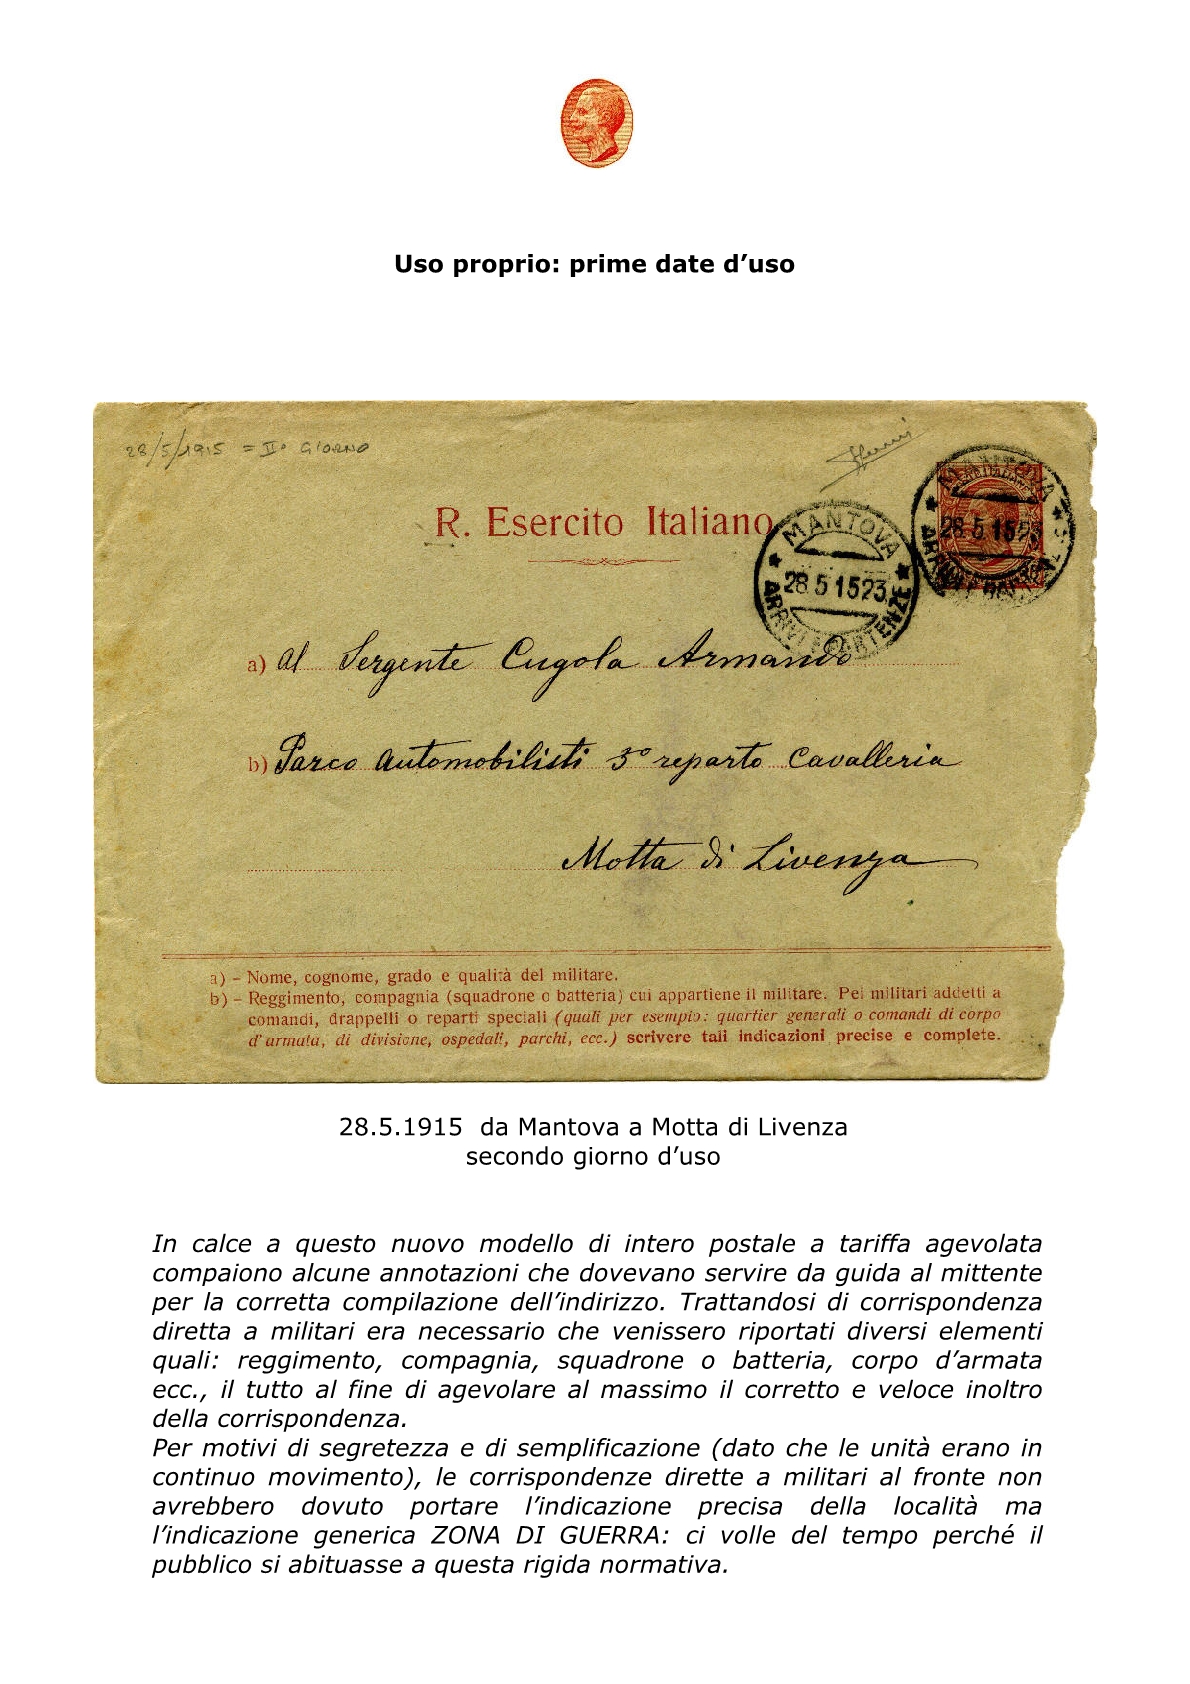 La busta postale R. Esercito Italiano 20153